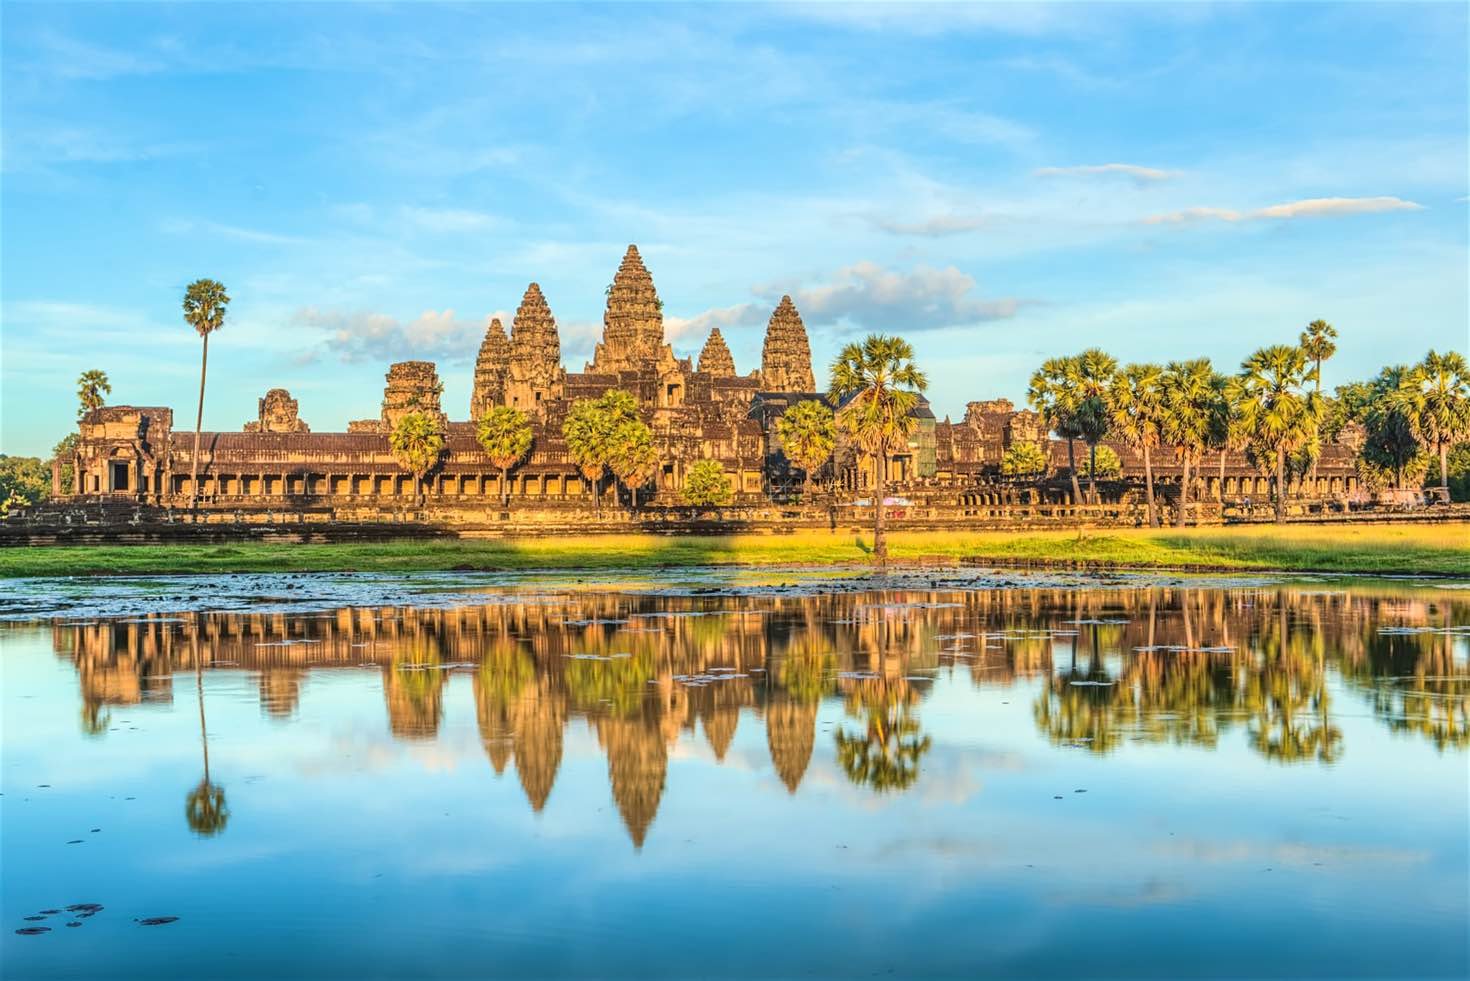  Angkor  Wat  The Beauty of Cambodia  Traveldigg com